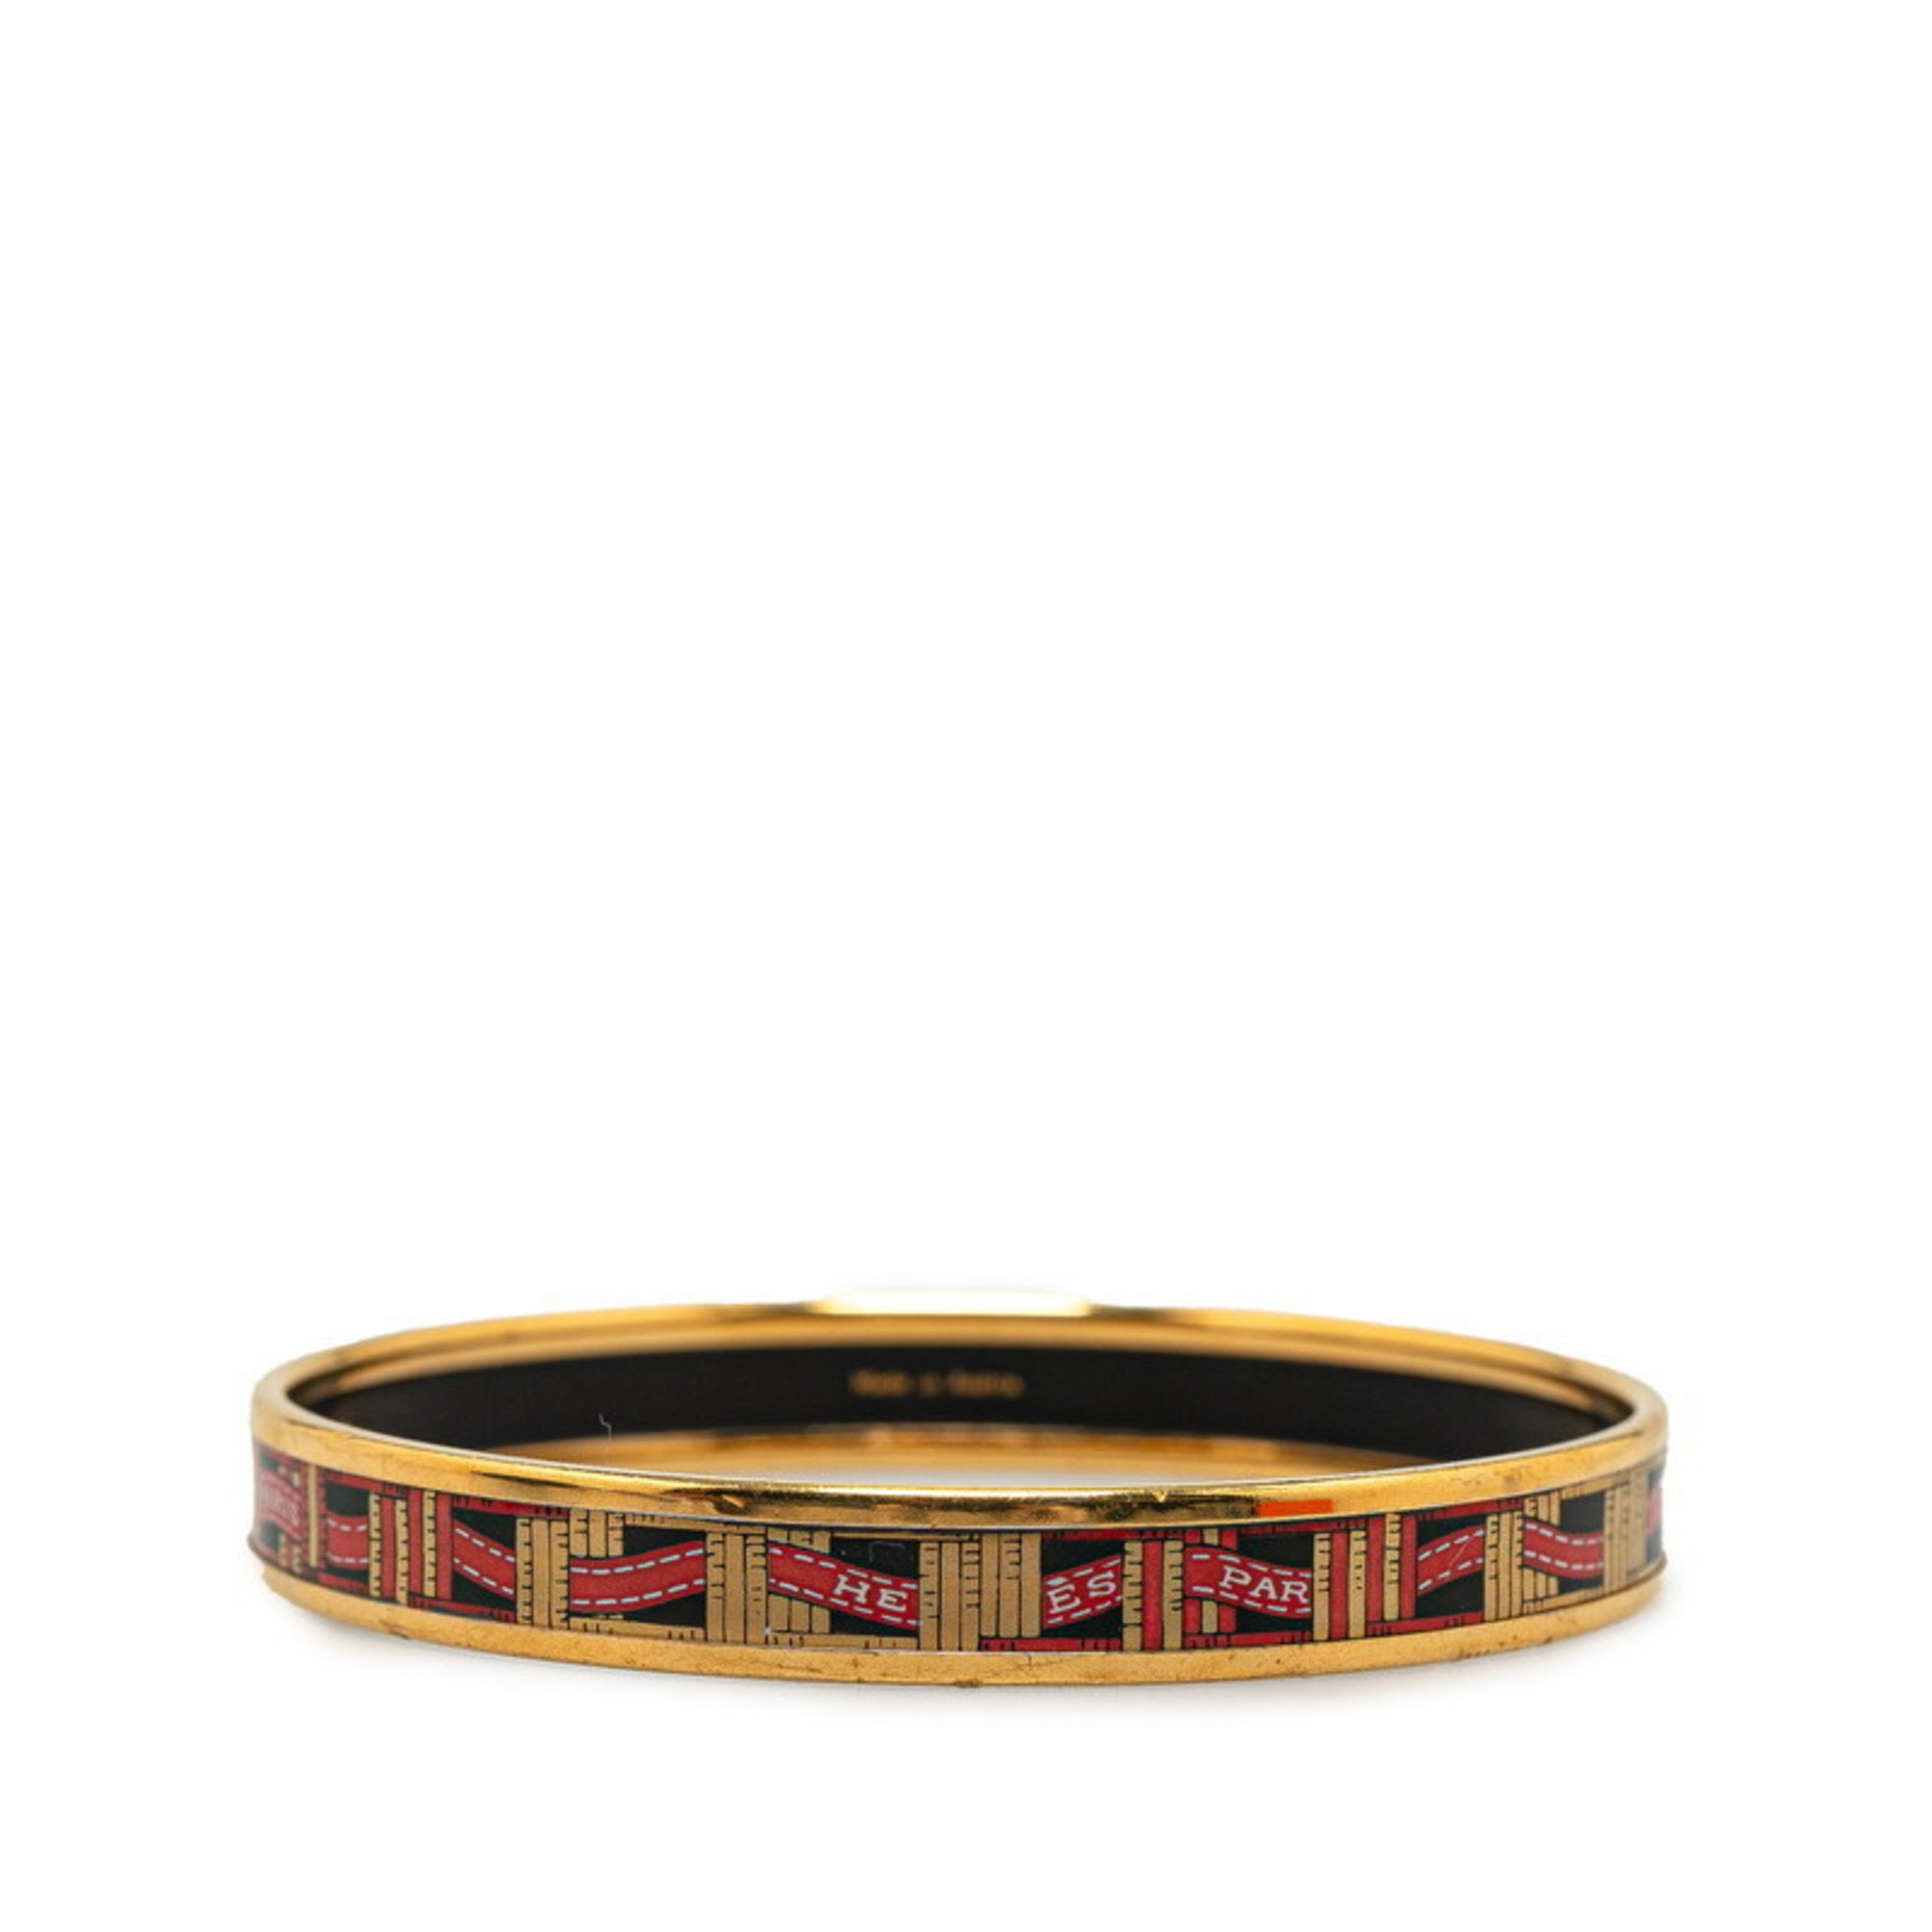 Hermes enamel PM ribbon cloisonne bangle red gold black plating women's HERMES